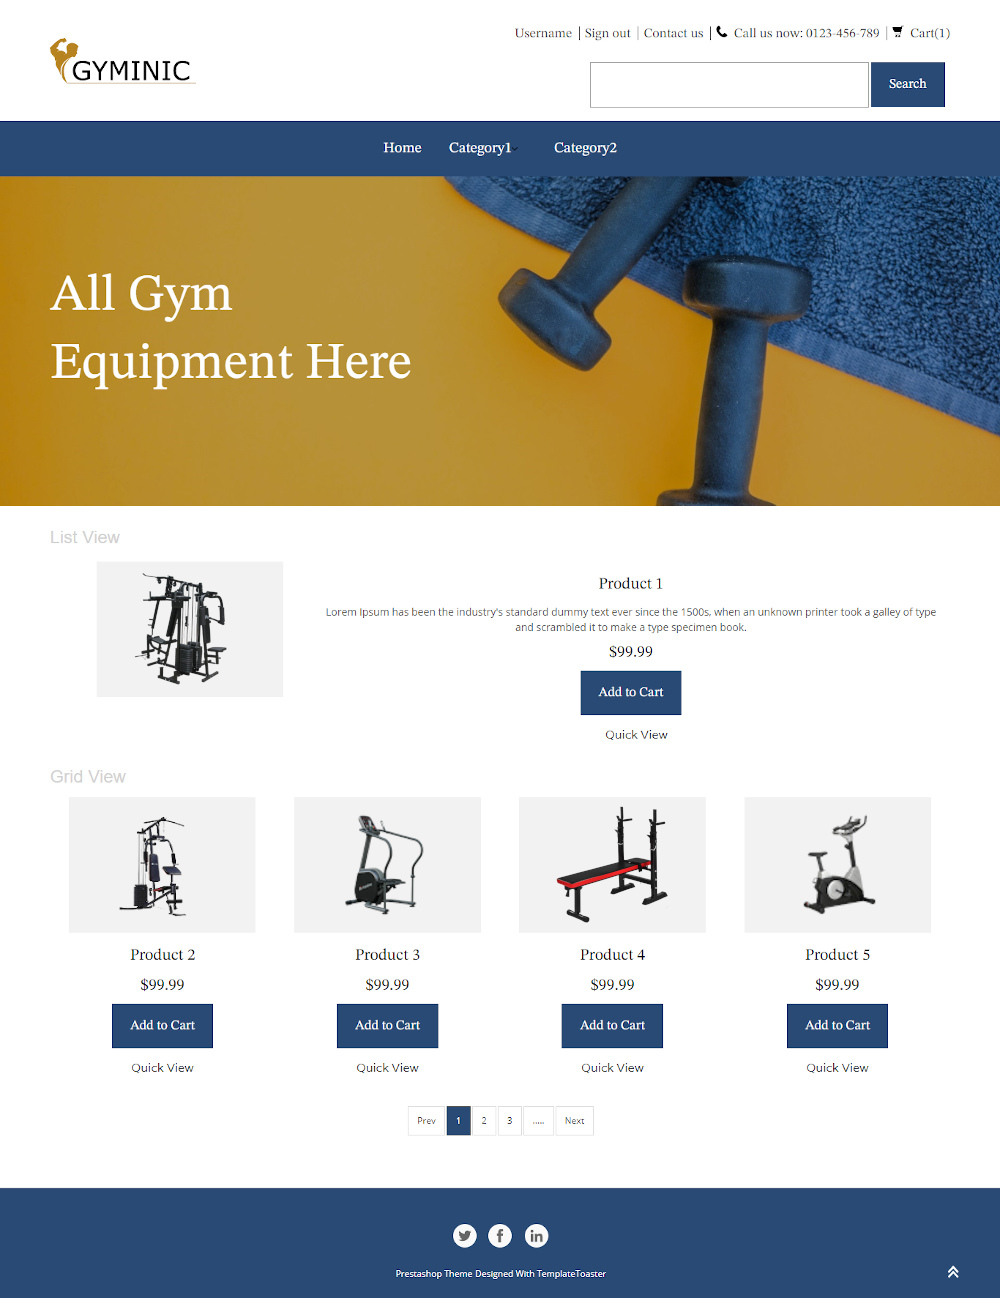 Gyminic - Online Gym Equipment's Online Store PrestaShop Theme